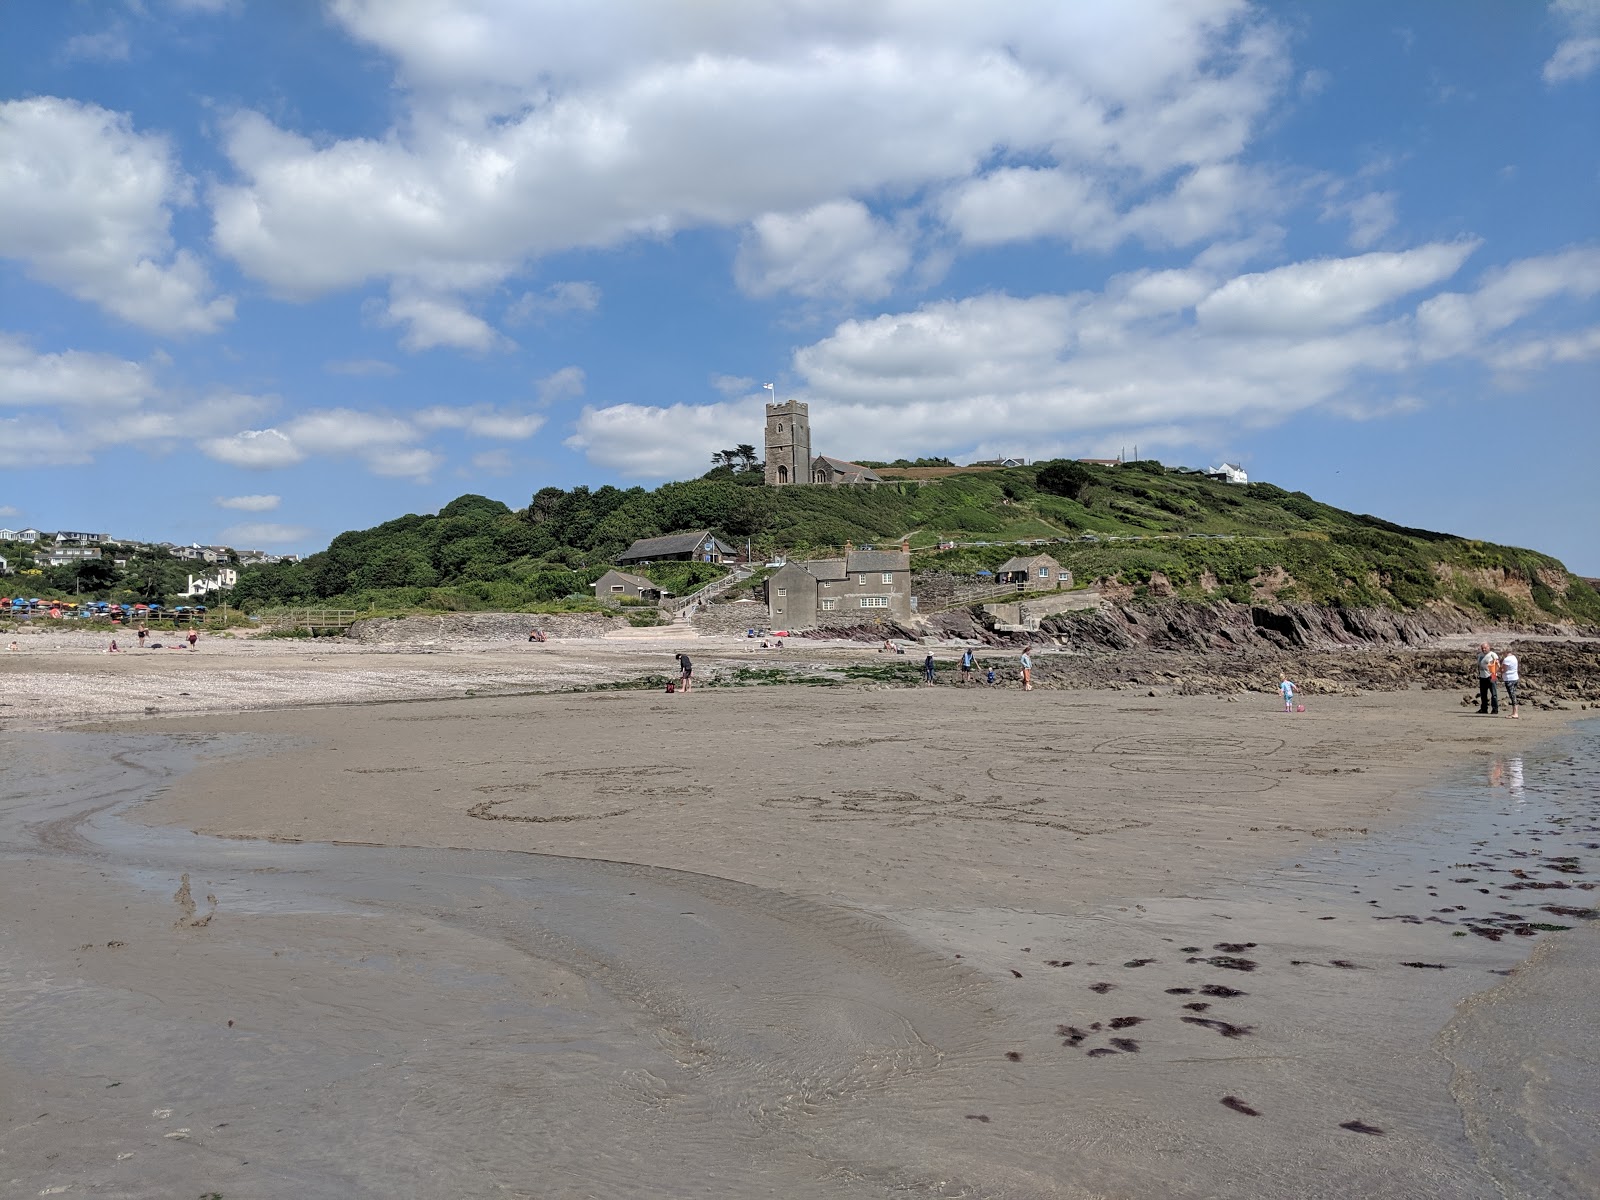 Zdjęcie Wembury beach - popularne miejsce wśród znawców relaksu